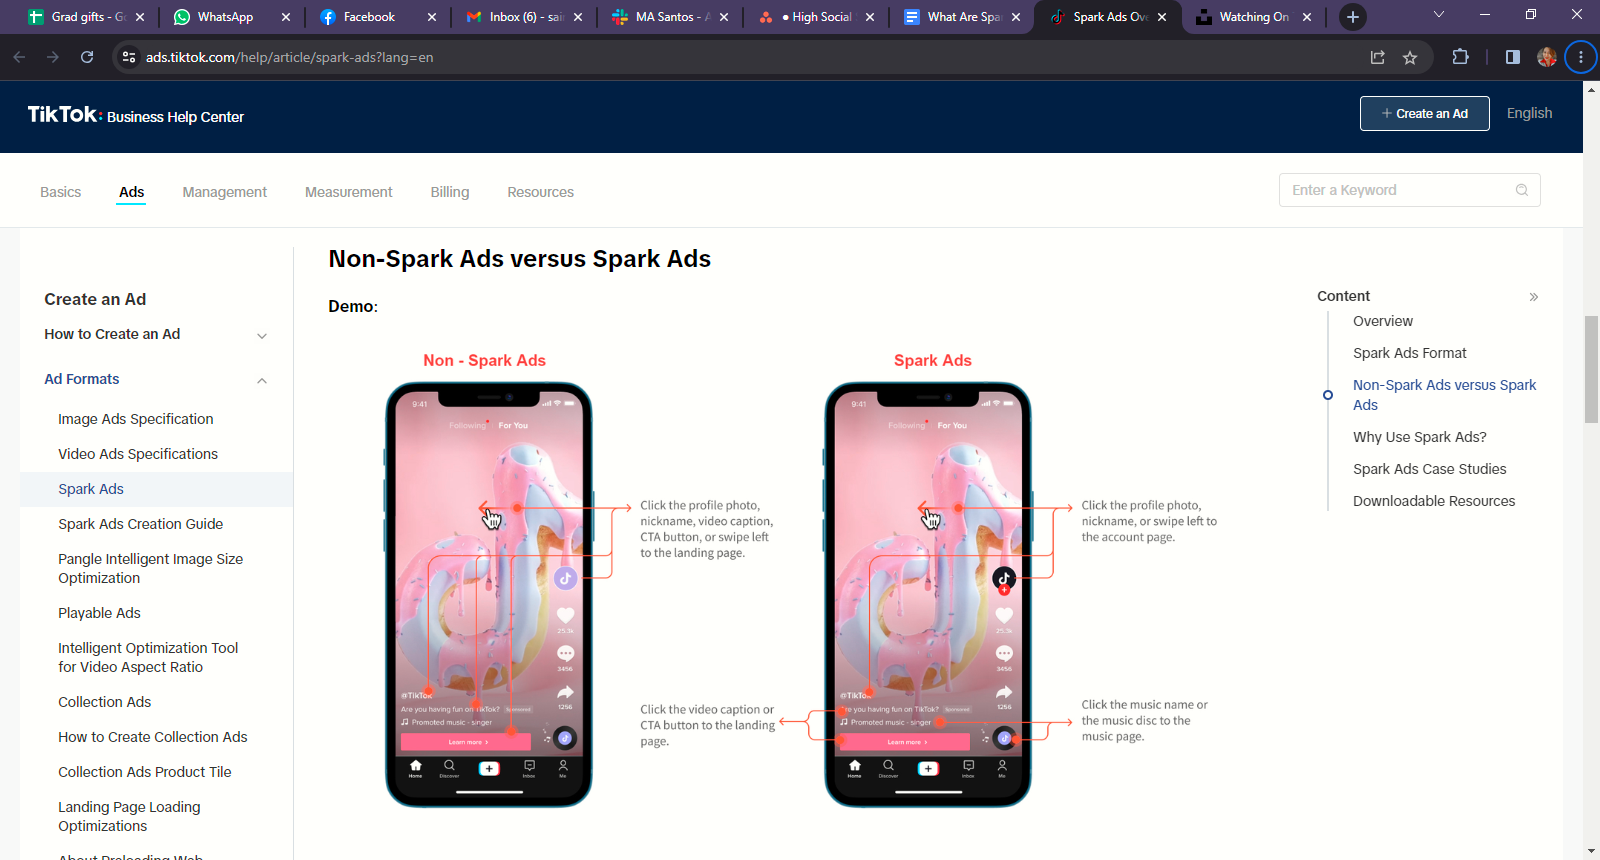 Página do TikTok Business Center ilustrando a diferença entre Spark Ads e não-Spark Ads. 